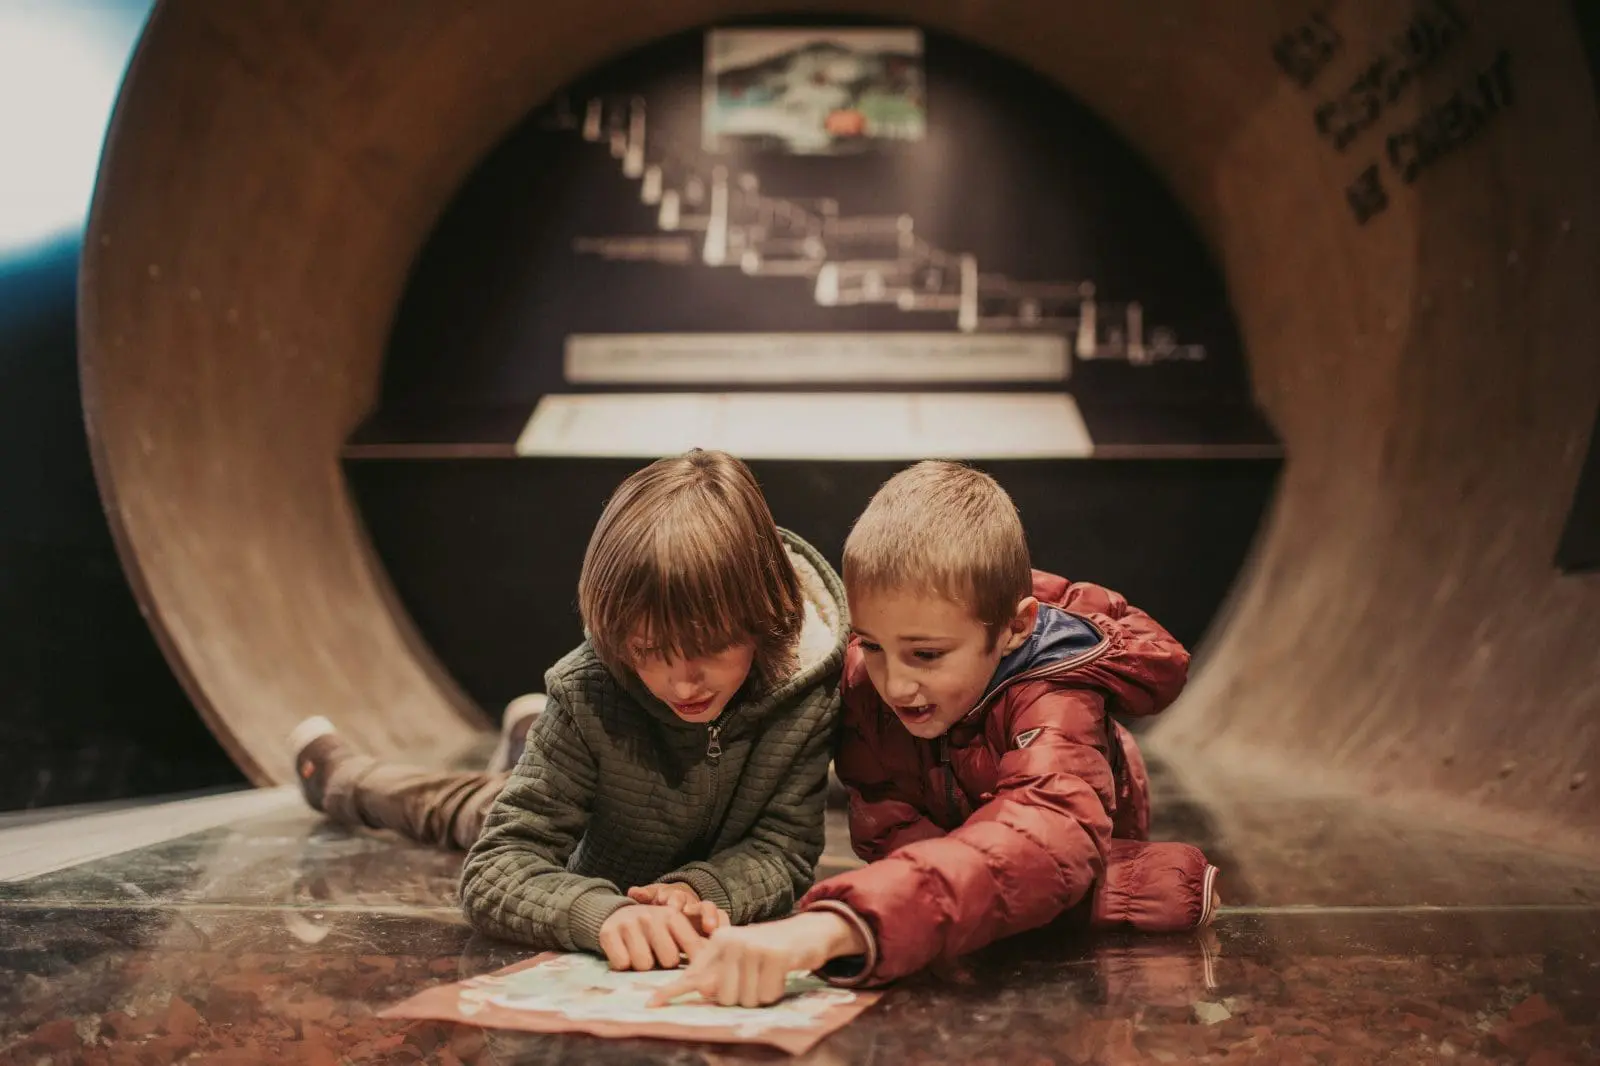 Dos nens al Museu del Tren del Ciment / Dos niños en el Museo del Tren del Ciment